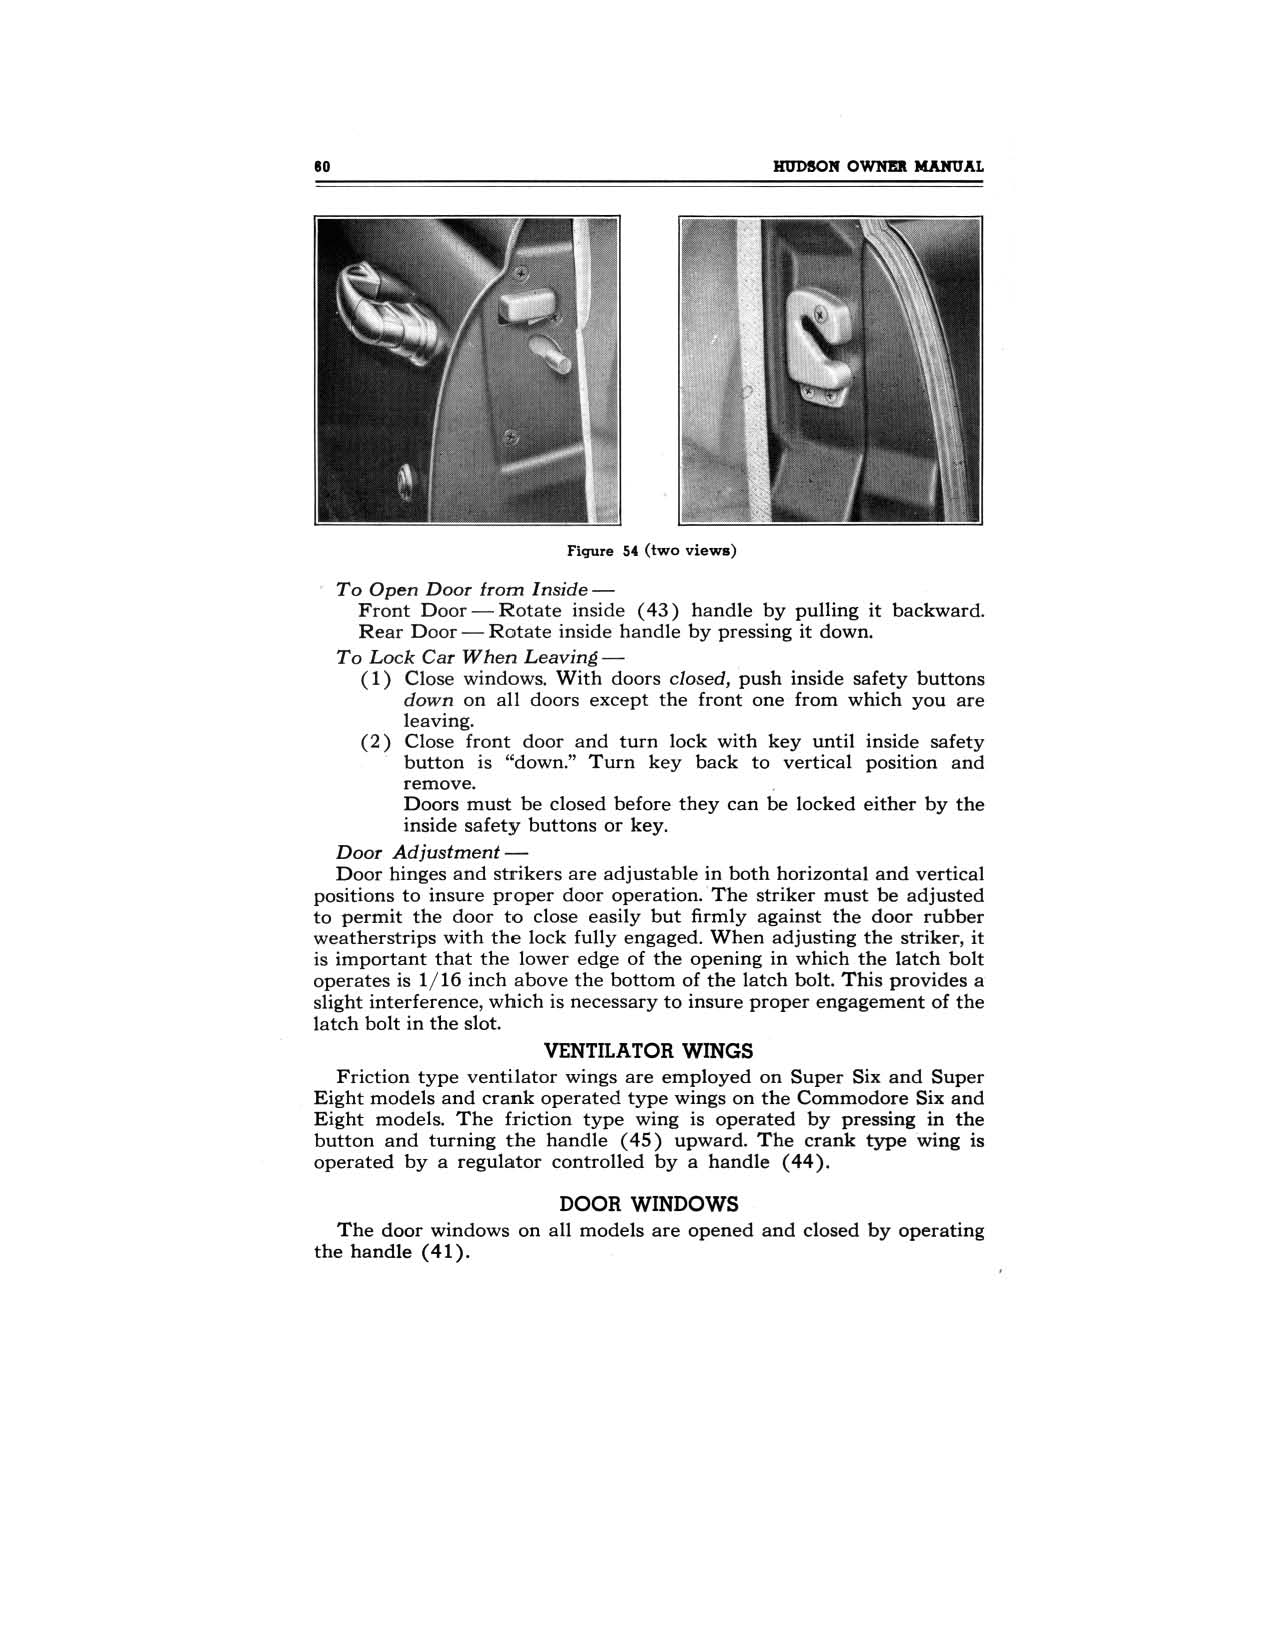 1949 Hudson Owners Manual-62